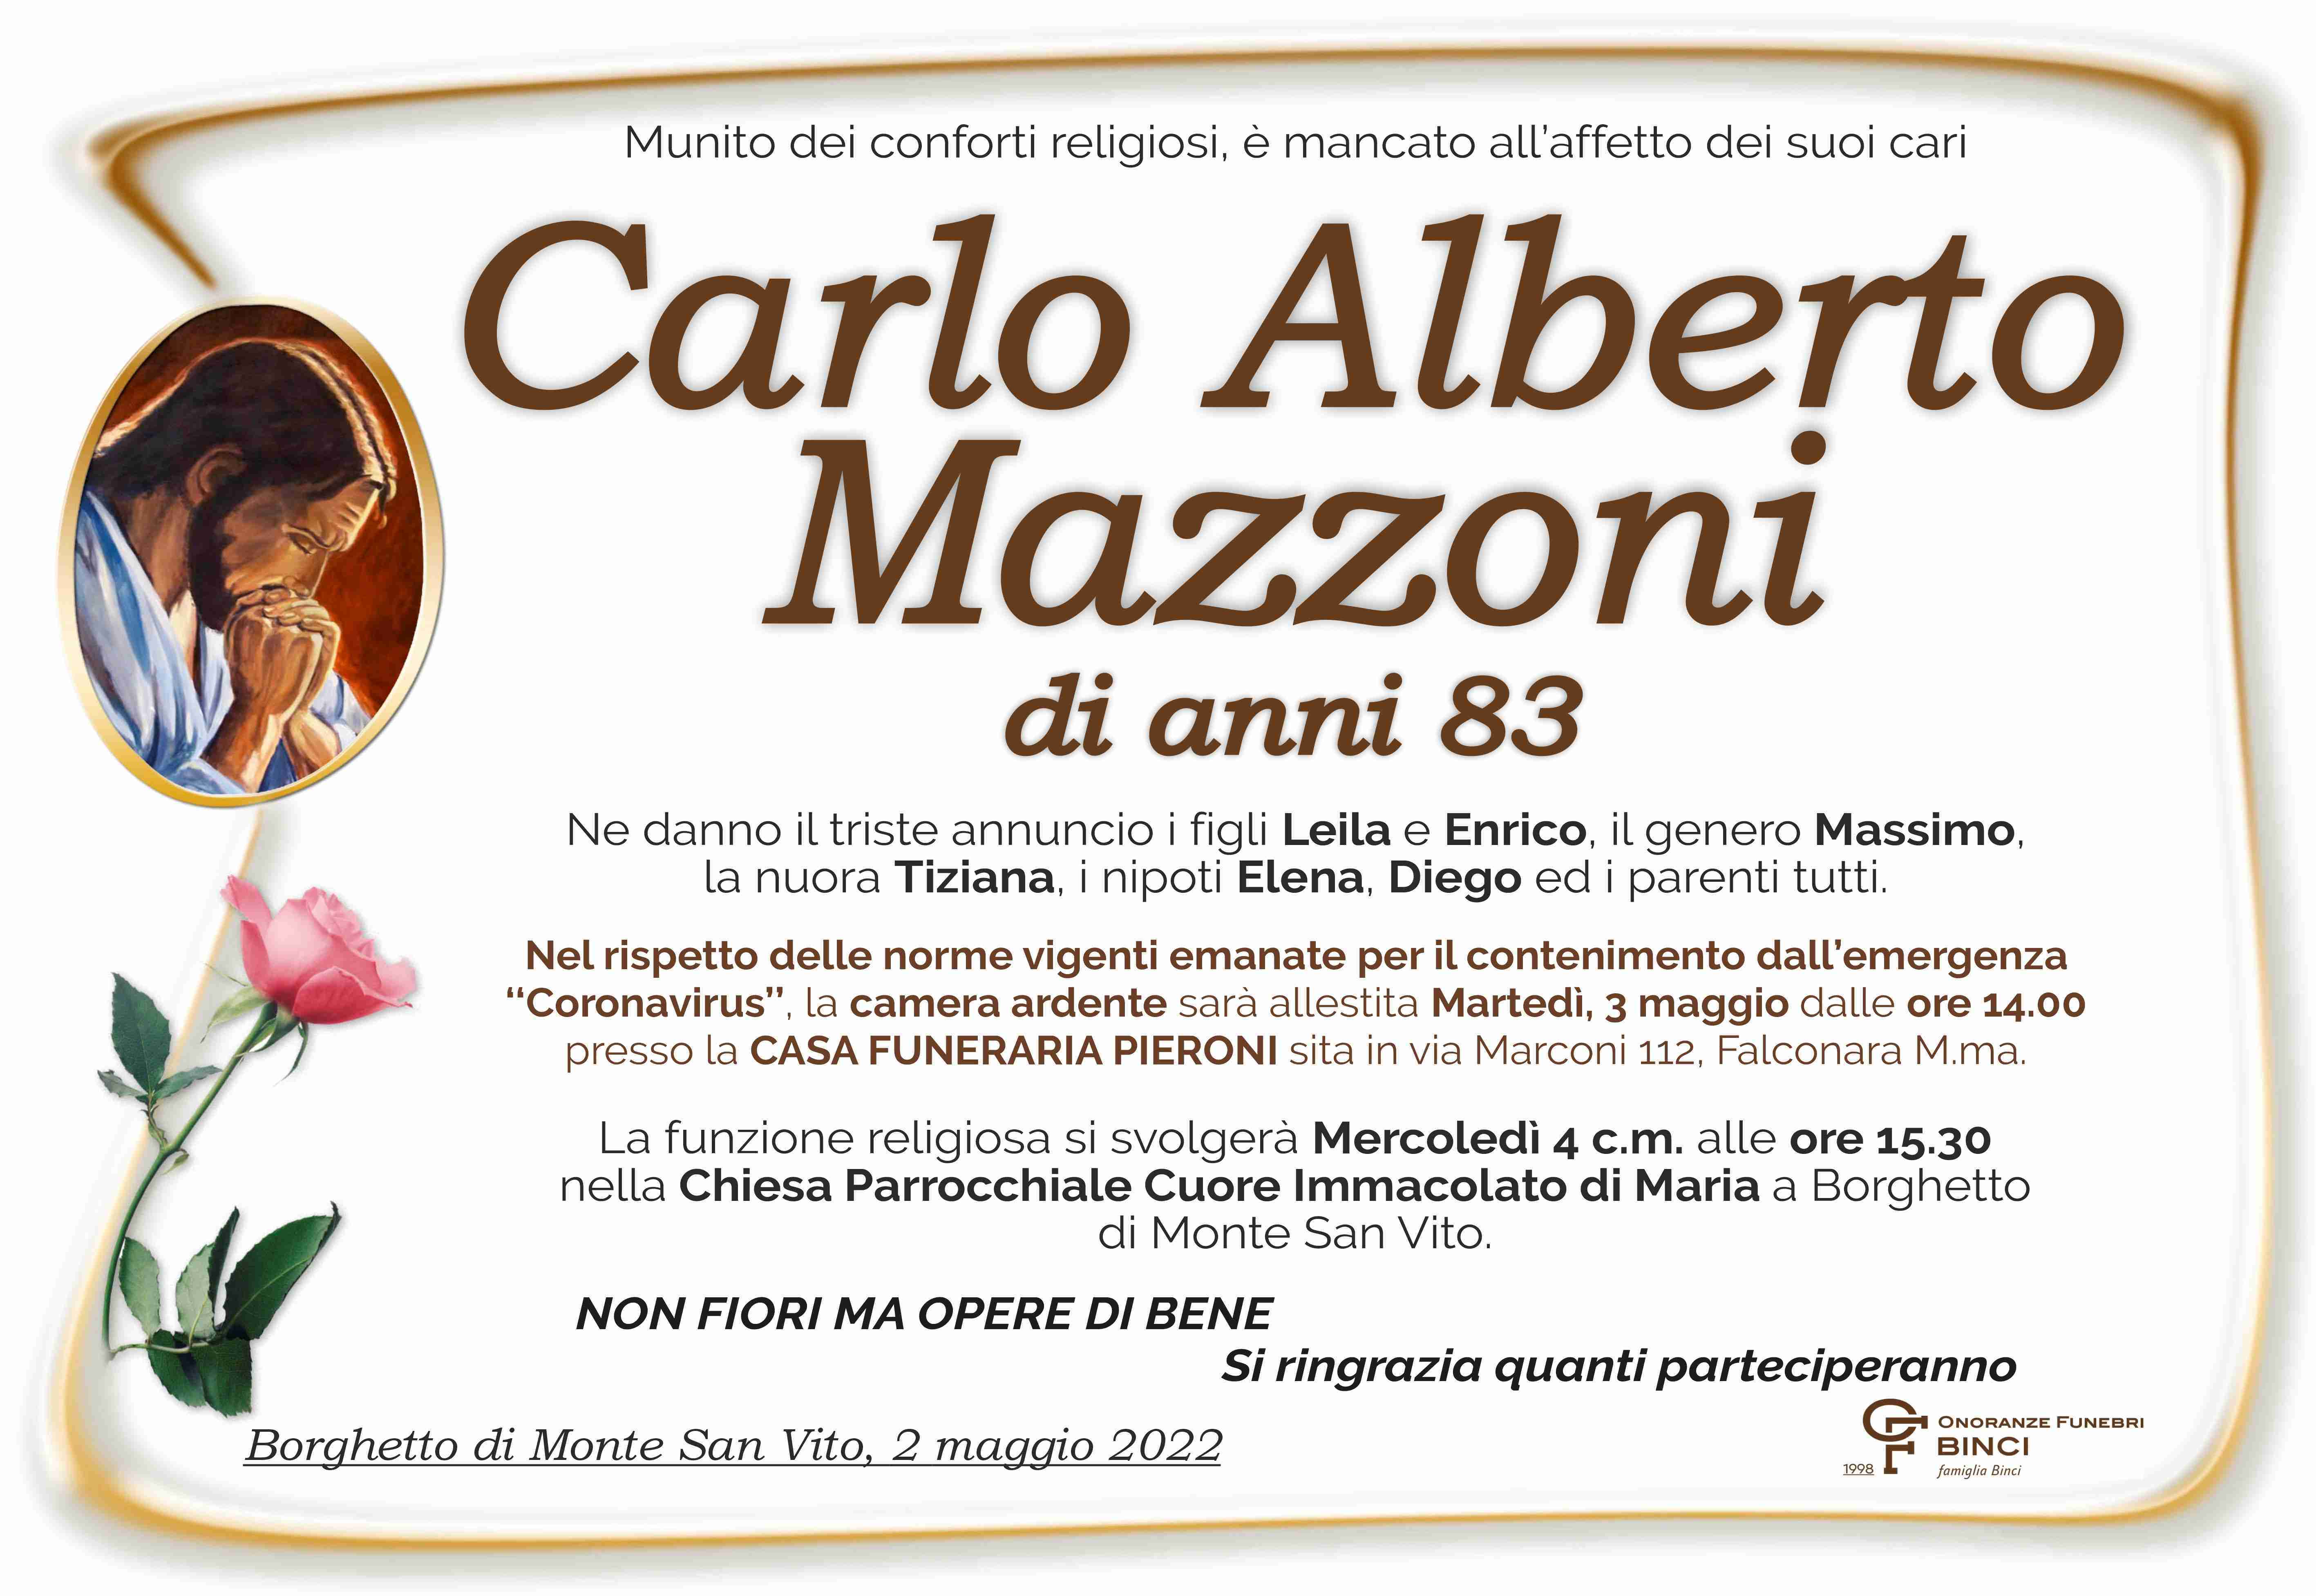 Carlo Alberto Mazzoni